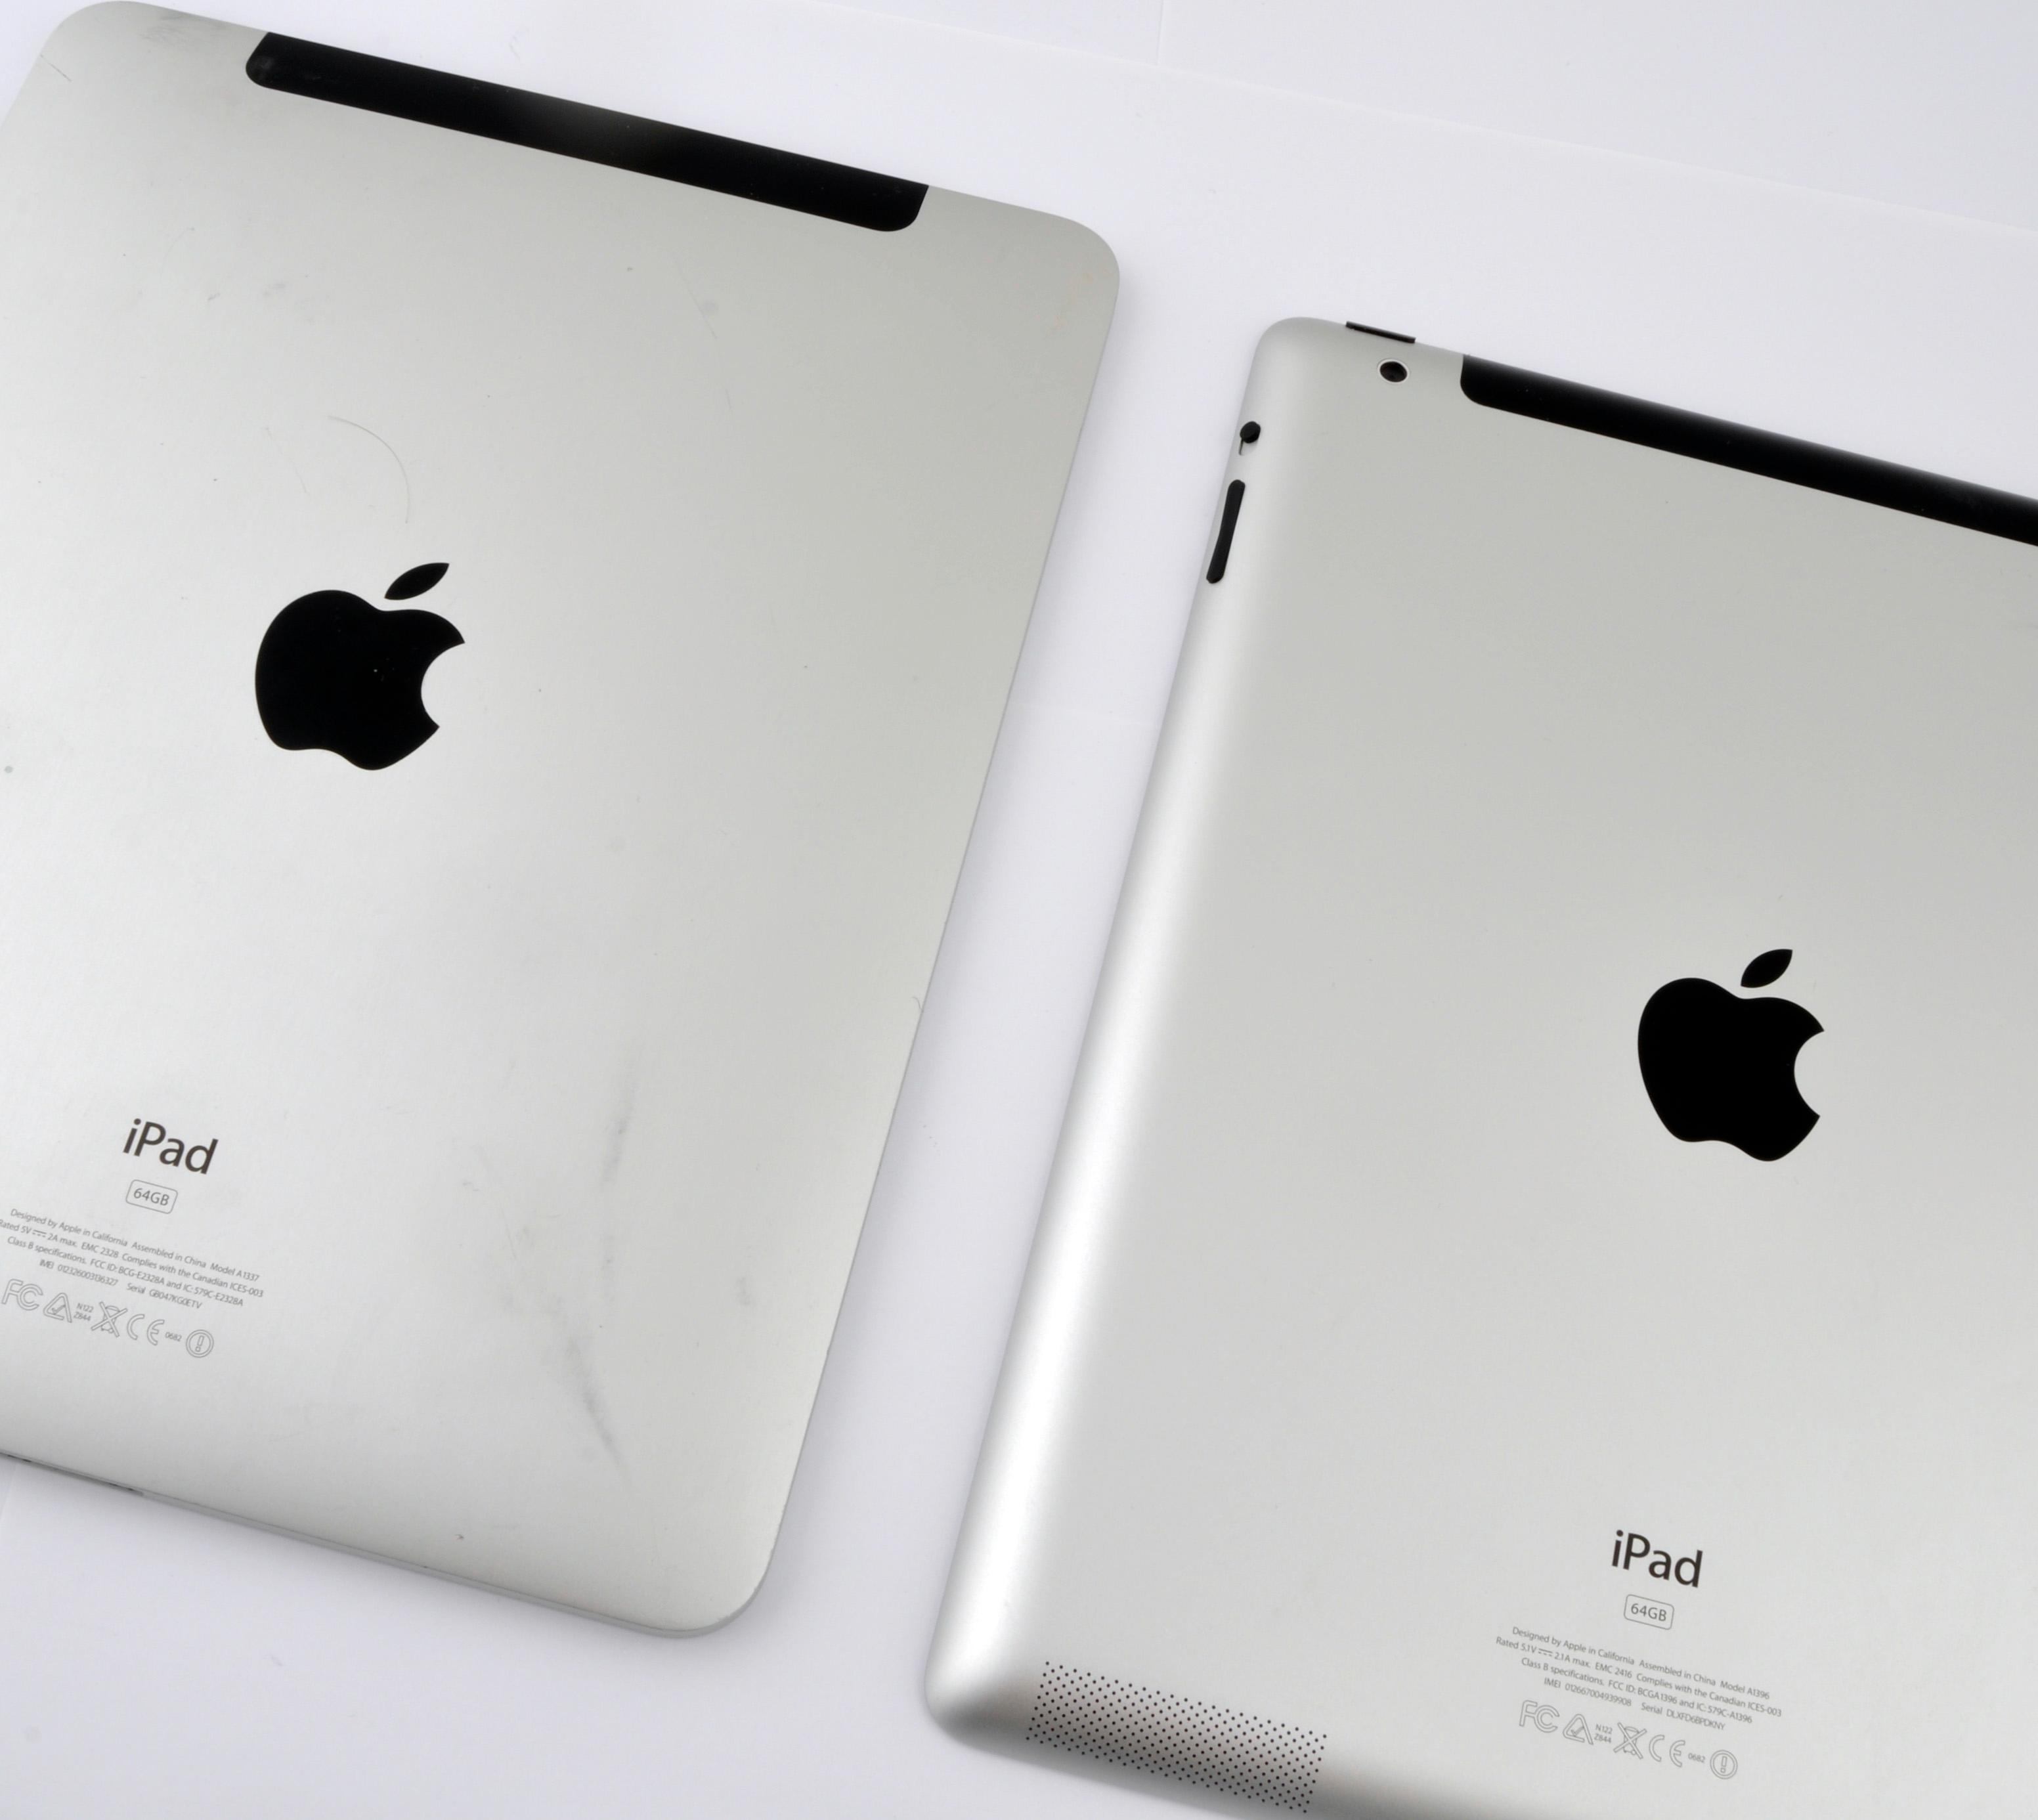 iPad 2 til høyre i bildet.